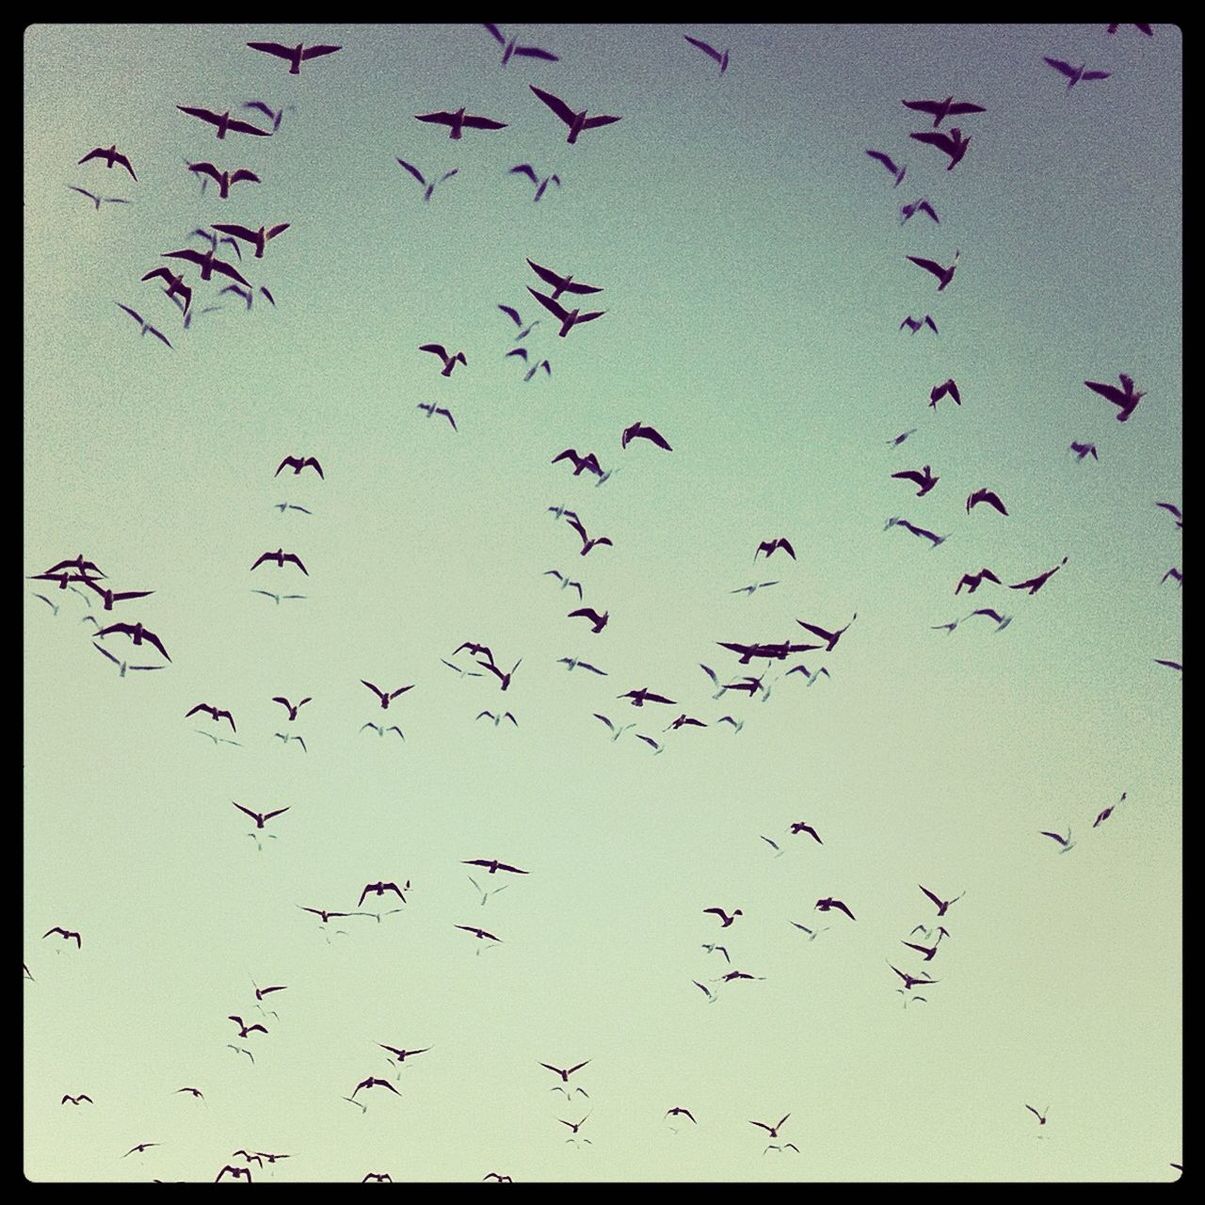 Full frame shot of birds flying in sky